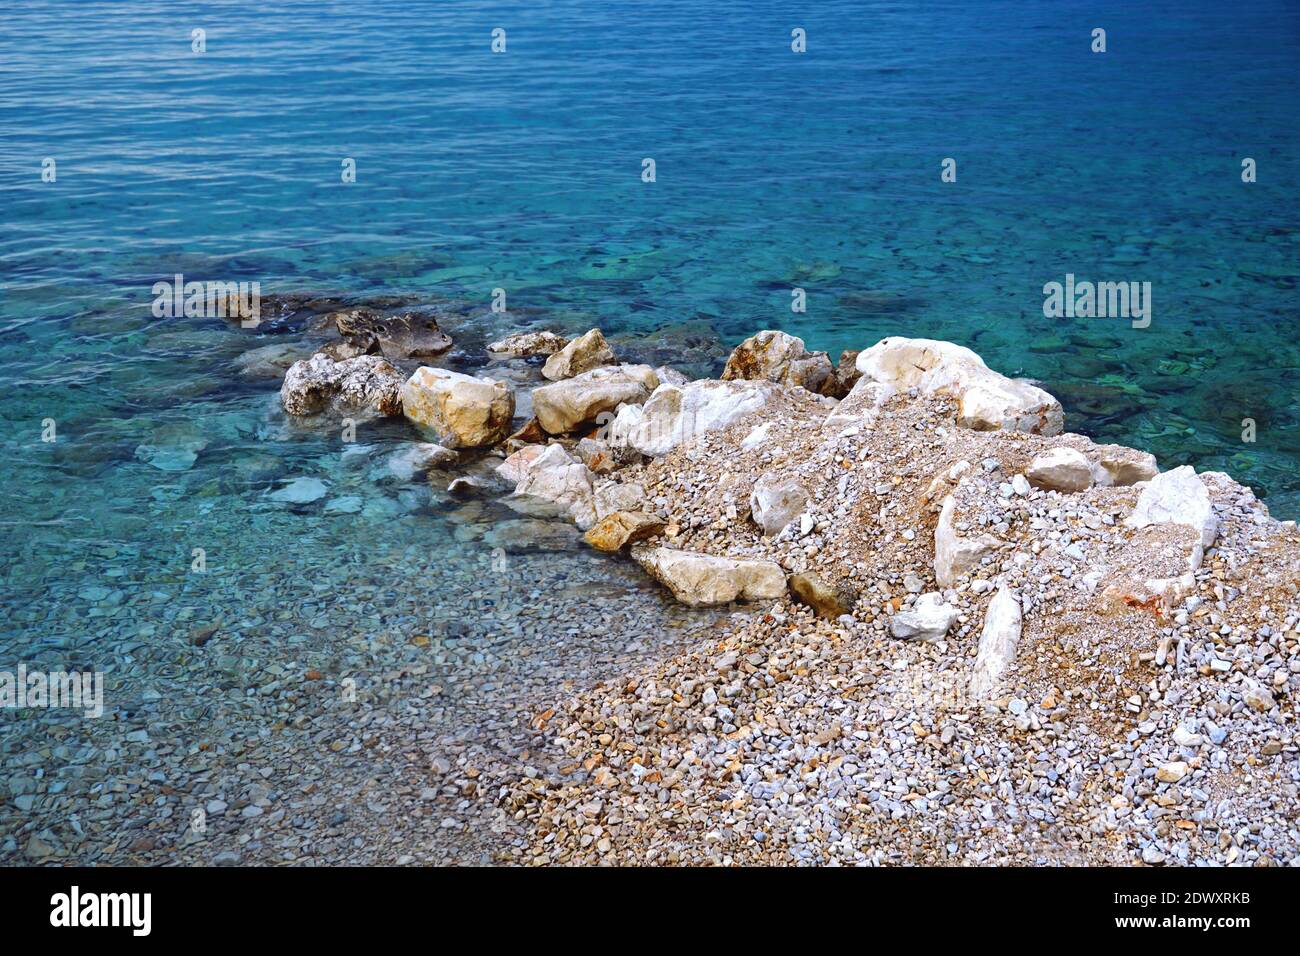 Arrecife de piedra y guijarros inmersos en el mar azul claro agua Foto de stock